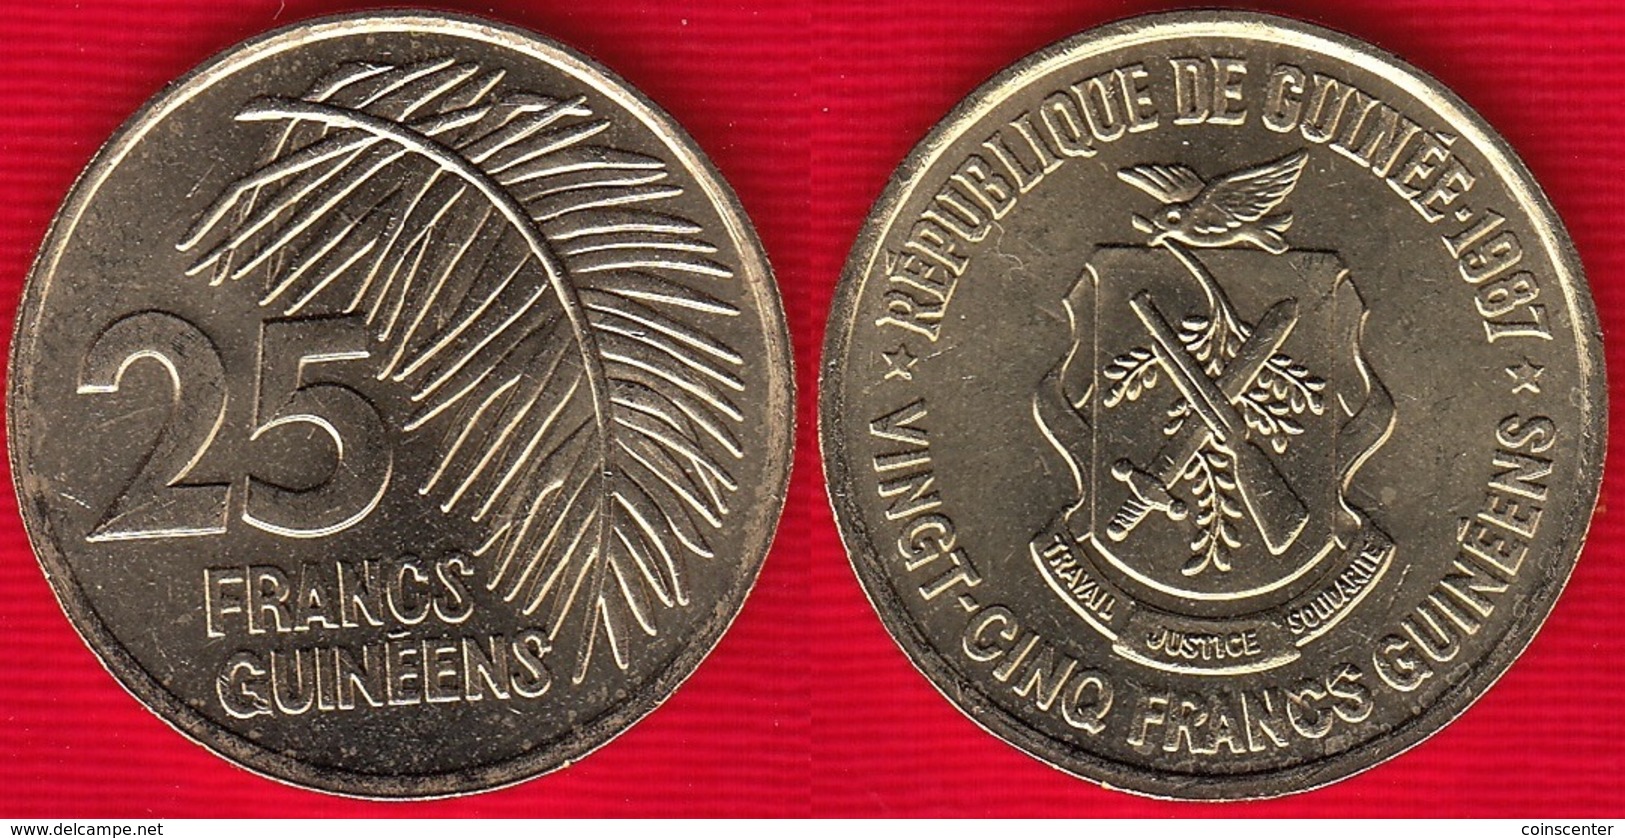 Guinea 25 Francs Guineens 1987 Km#60 UNC - Guinea